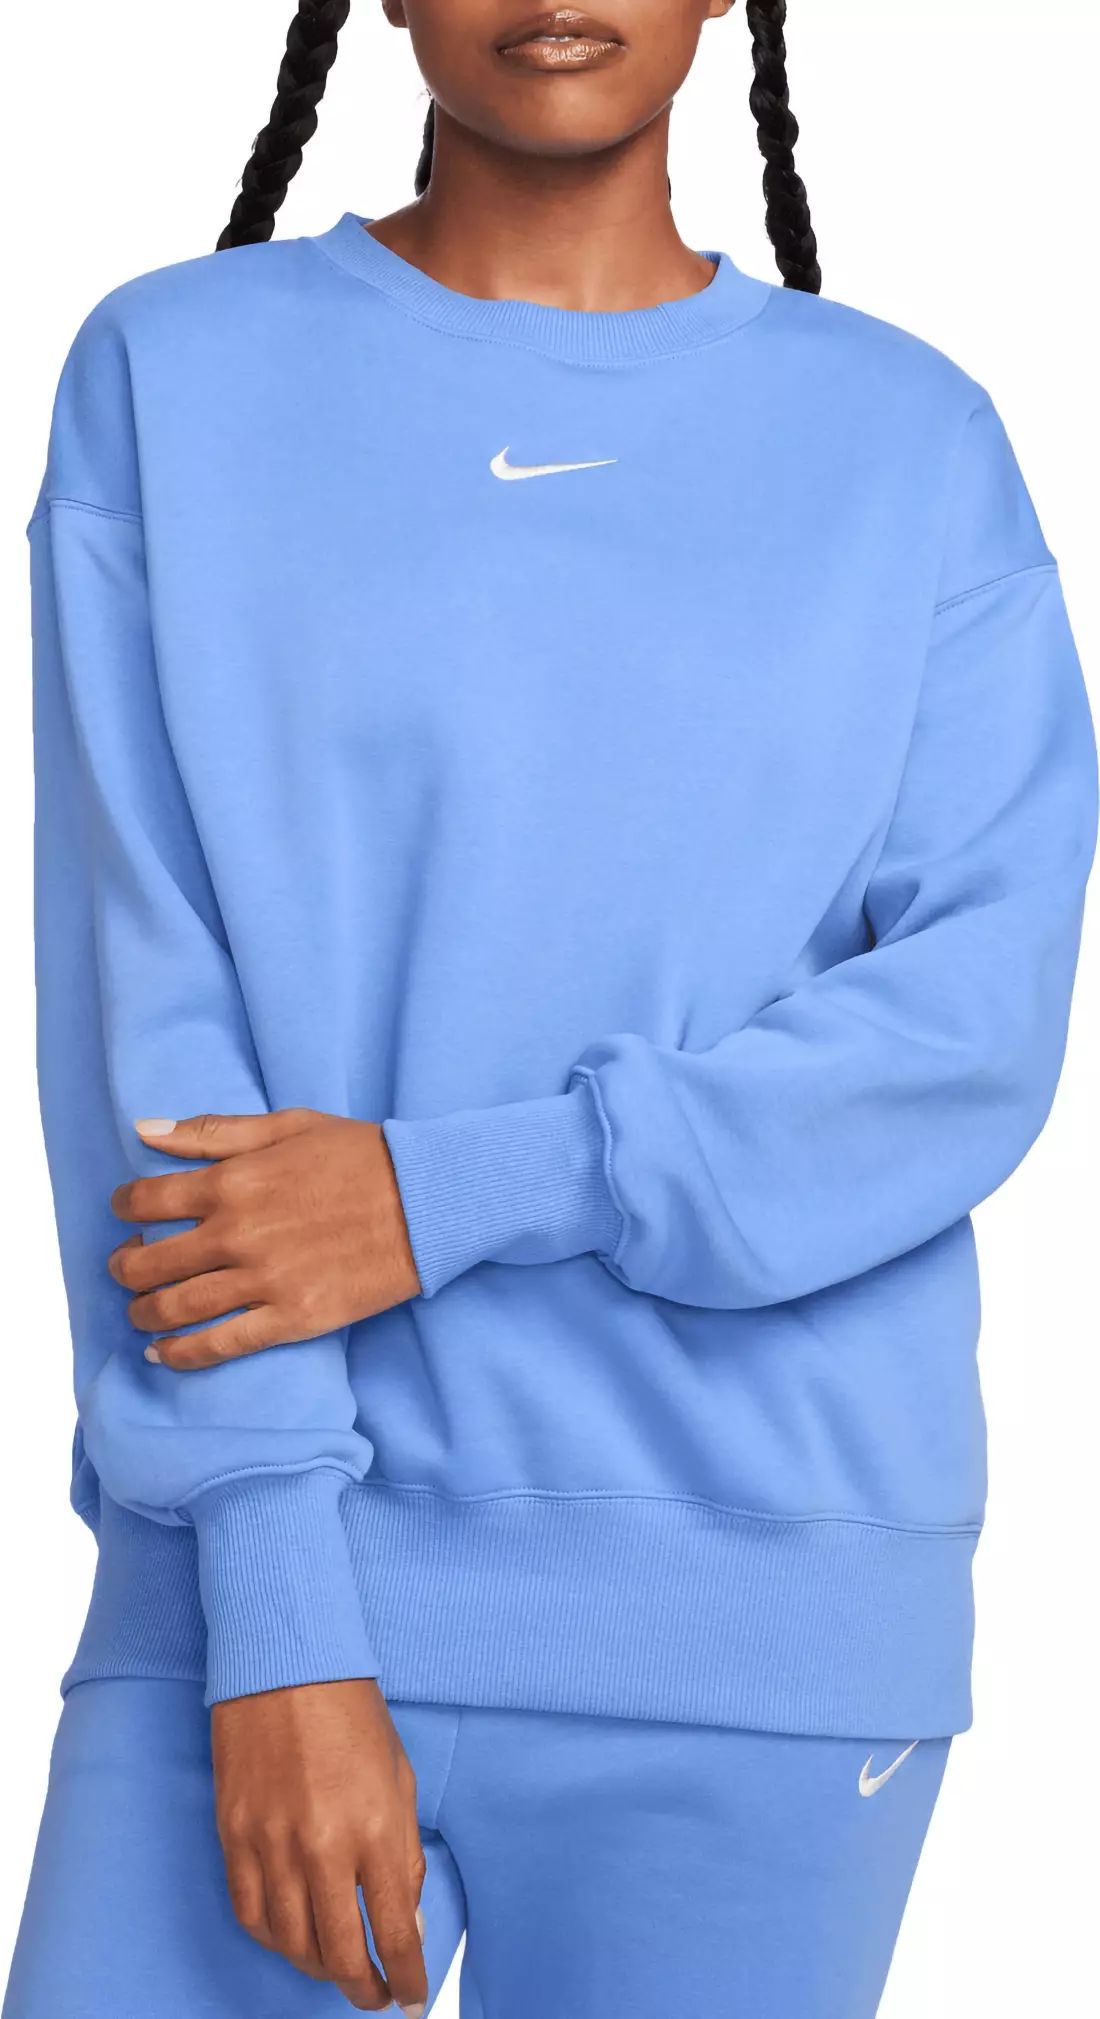 Nike Sportswear Women's Phoenix Fleece Oversized Crewneck Sweatshirt | Dick's Sporting Goods